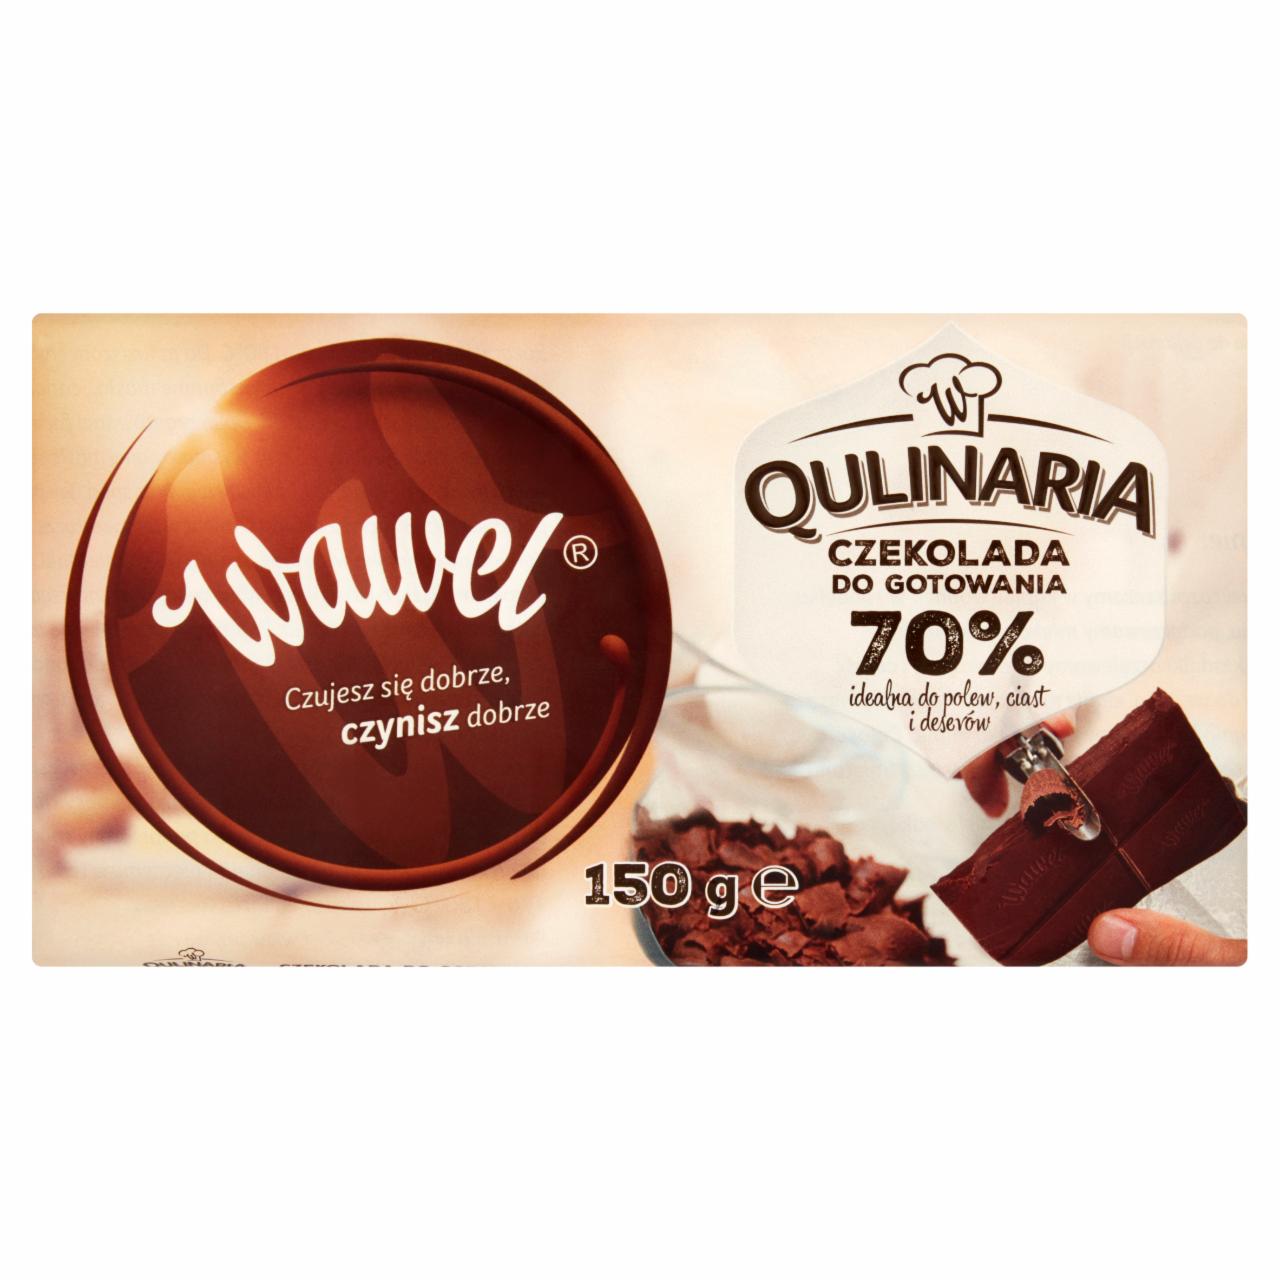 Zdjęcia - Wawel Qulinaria Czekolada do gotowania 70% 150 g